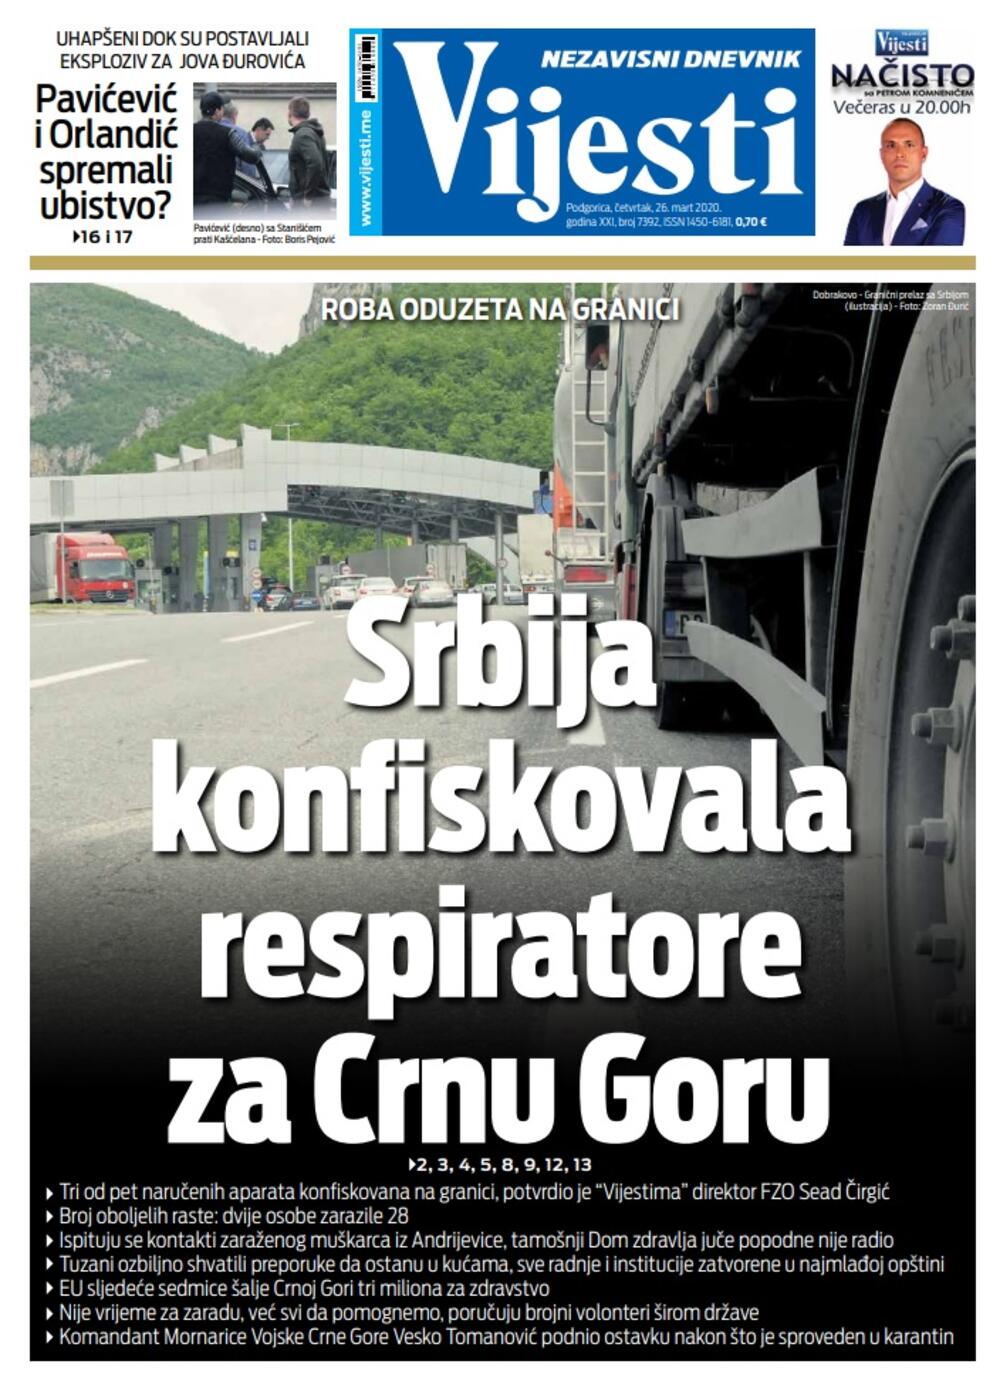 Naslovna strana "Vijesti" za 26. mart 2020. godine, Foto: Vijesti